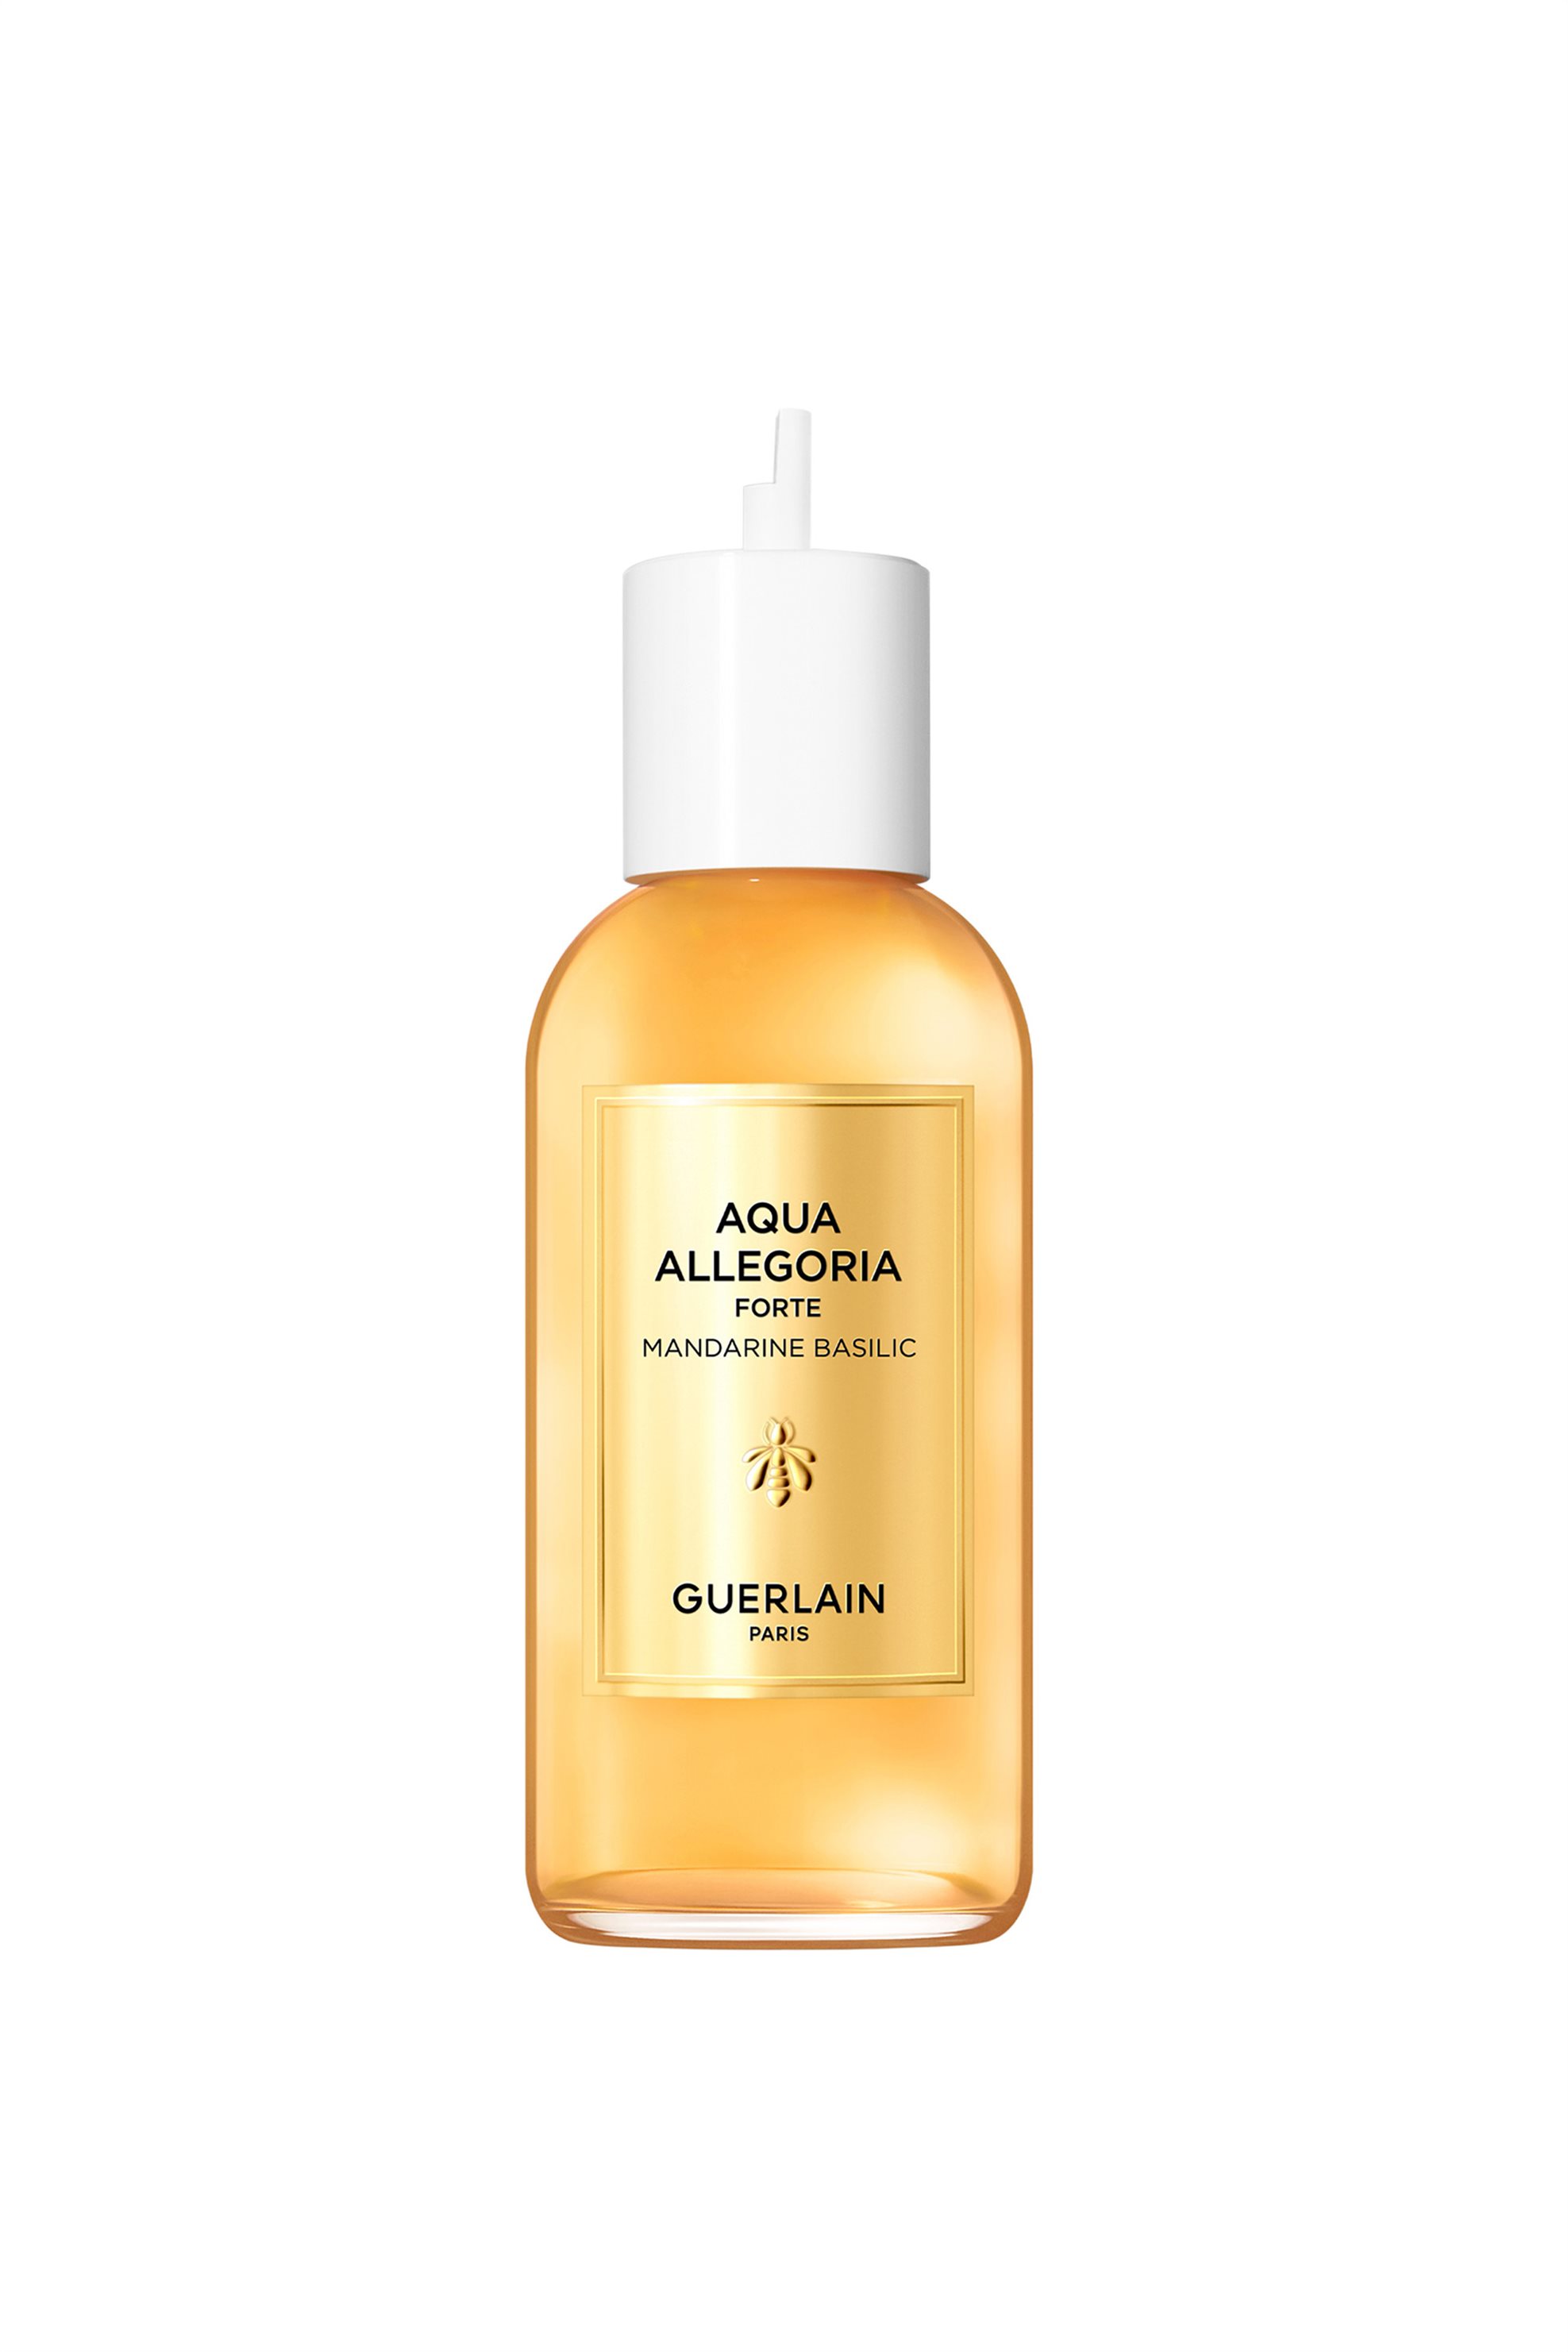 Guerlain Aqua Allegoria Forte Mandarine Basilic Eau de Parfum Refill 200 ml